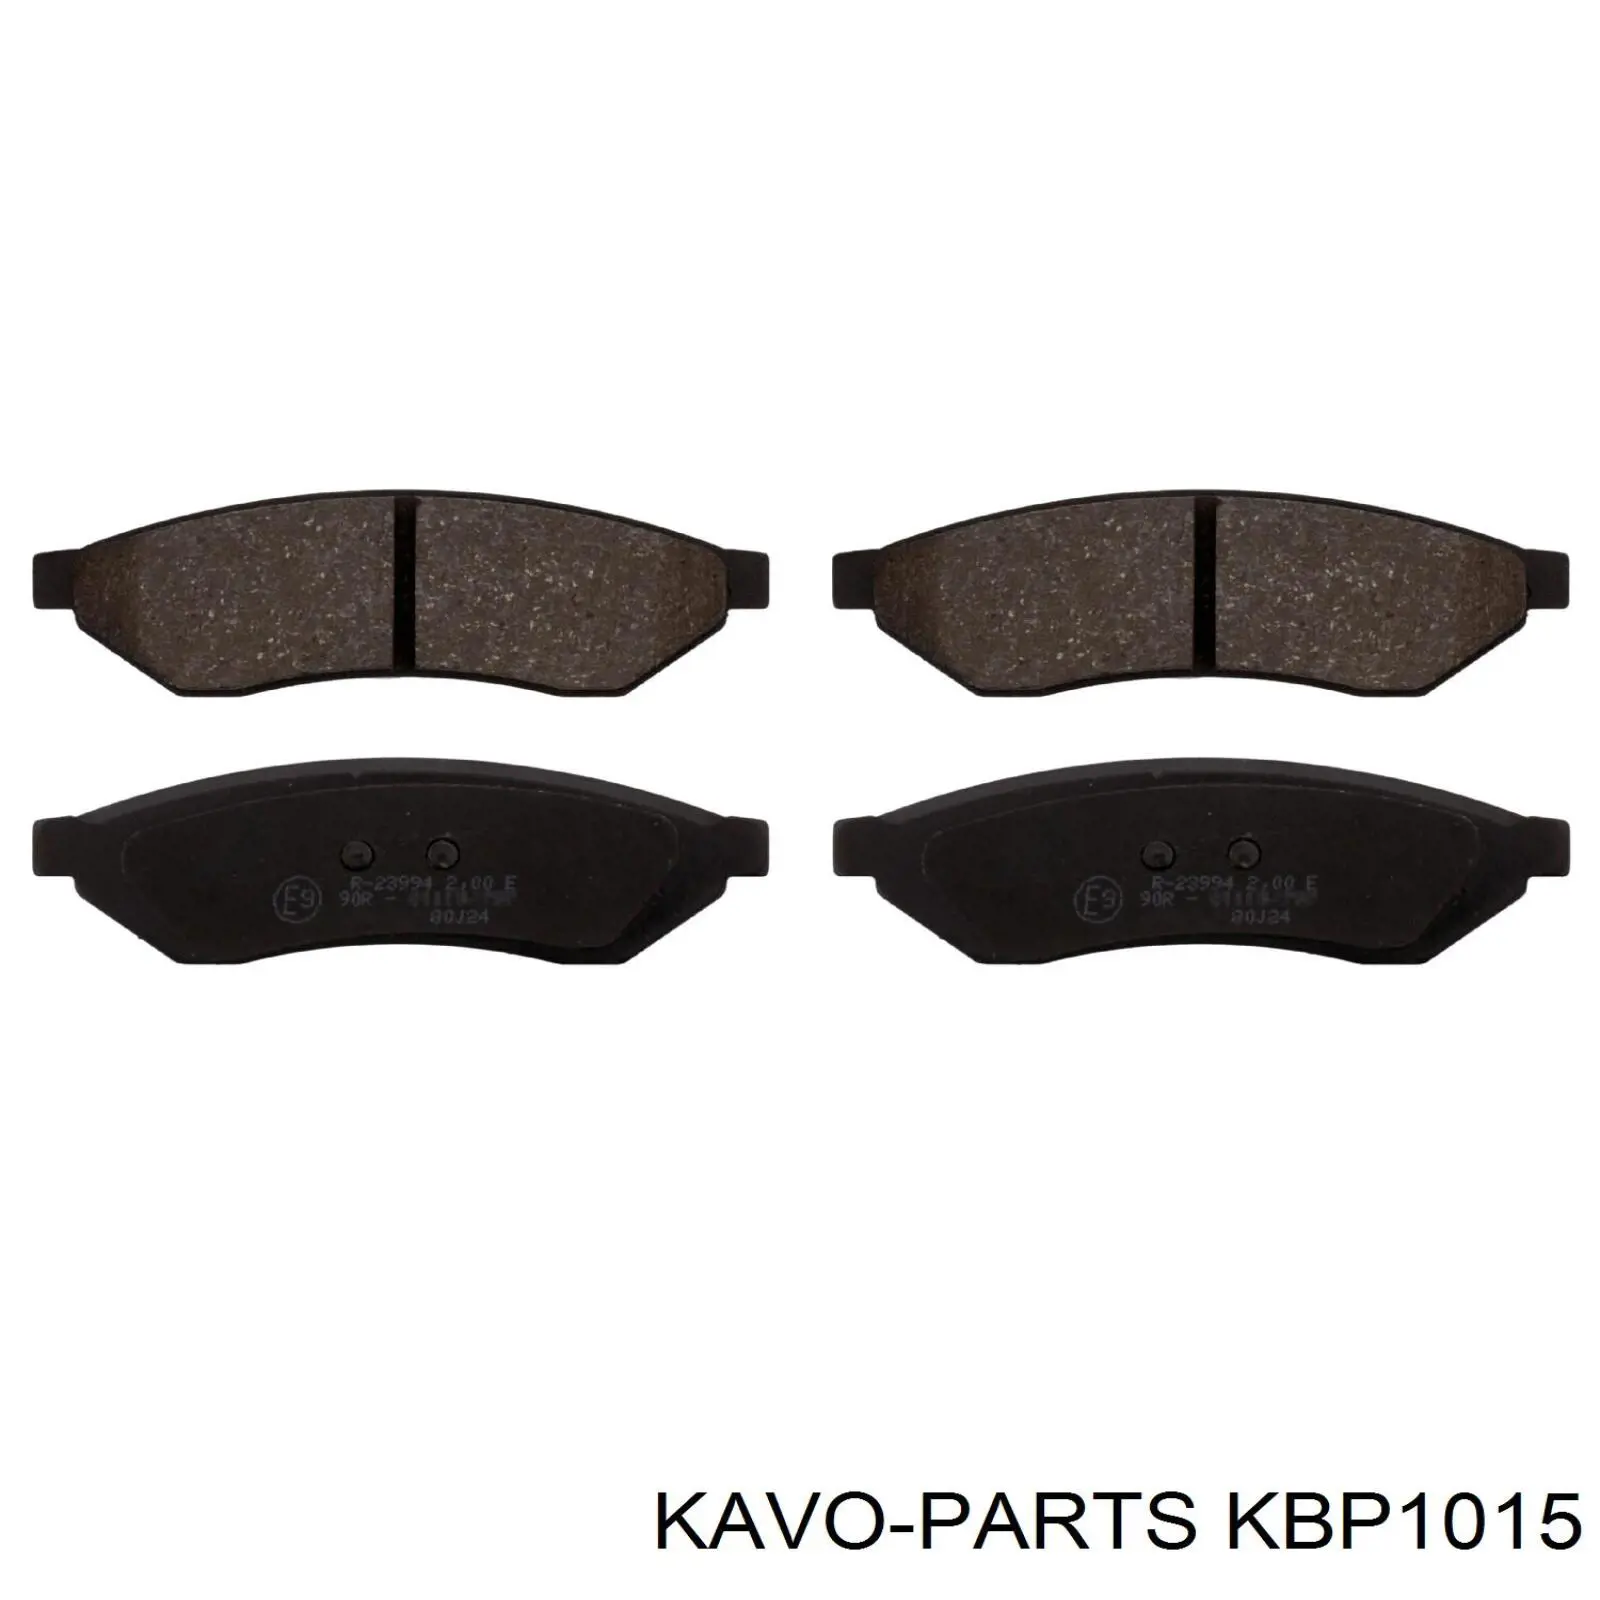 KBP1015 Kavo Parts pastillas de freno traseras